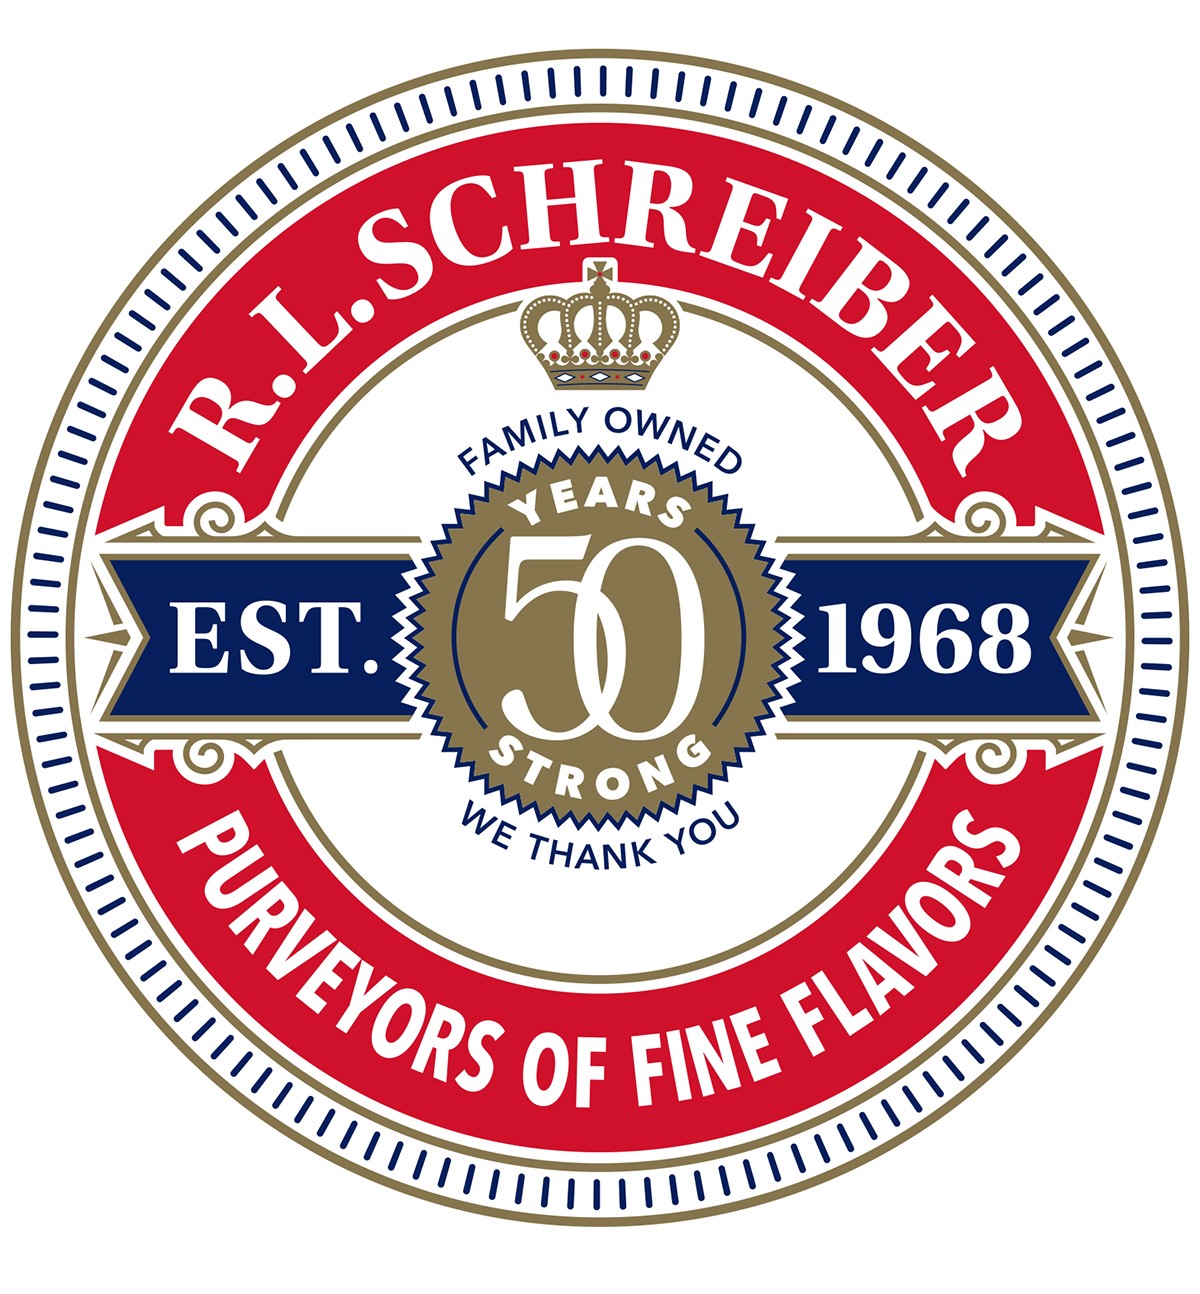 R.L. Schreiber's 50 Year Anniversary